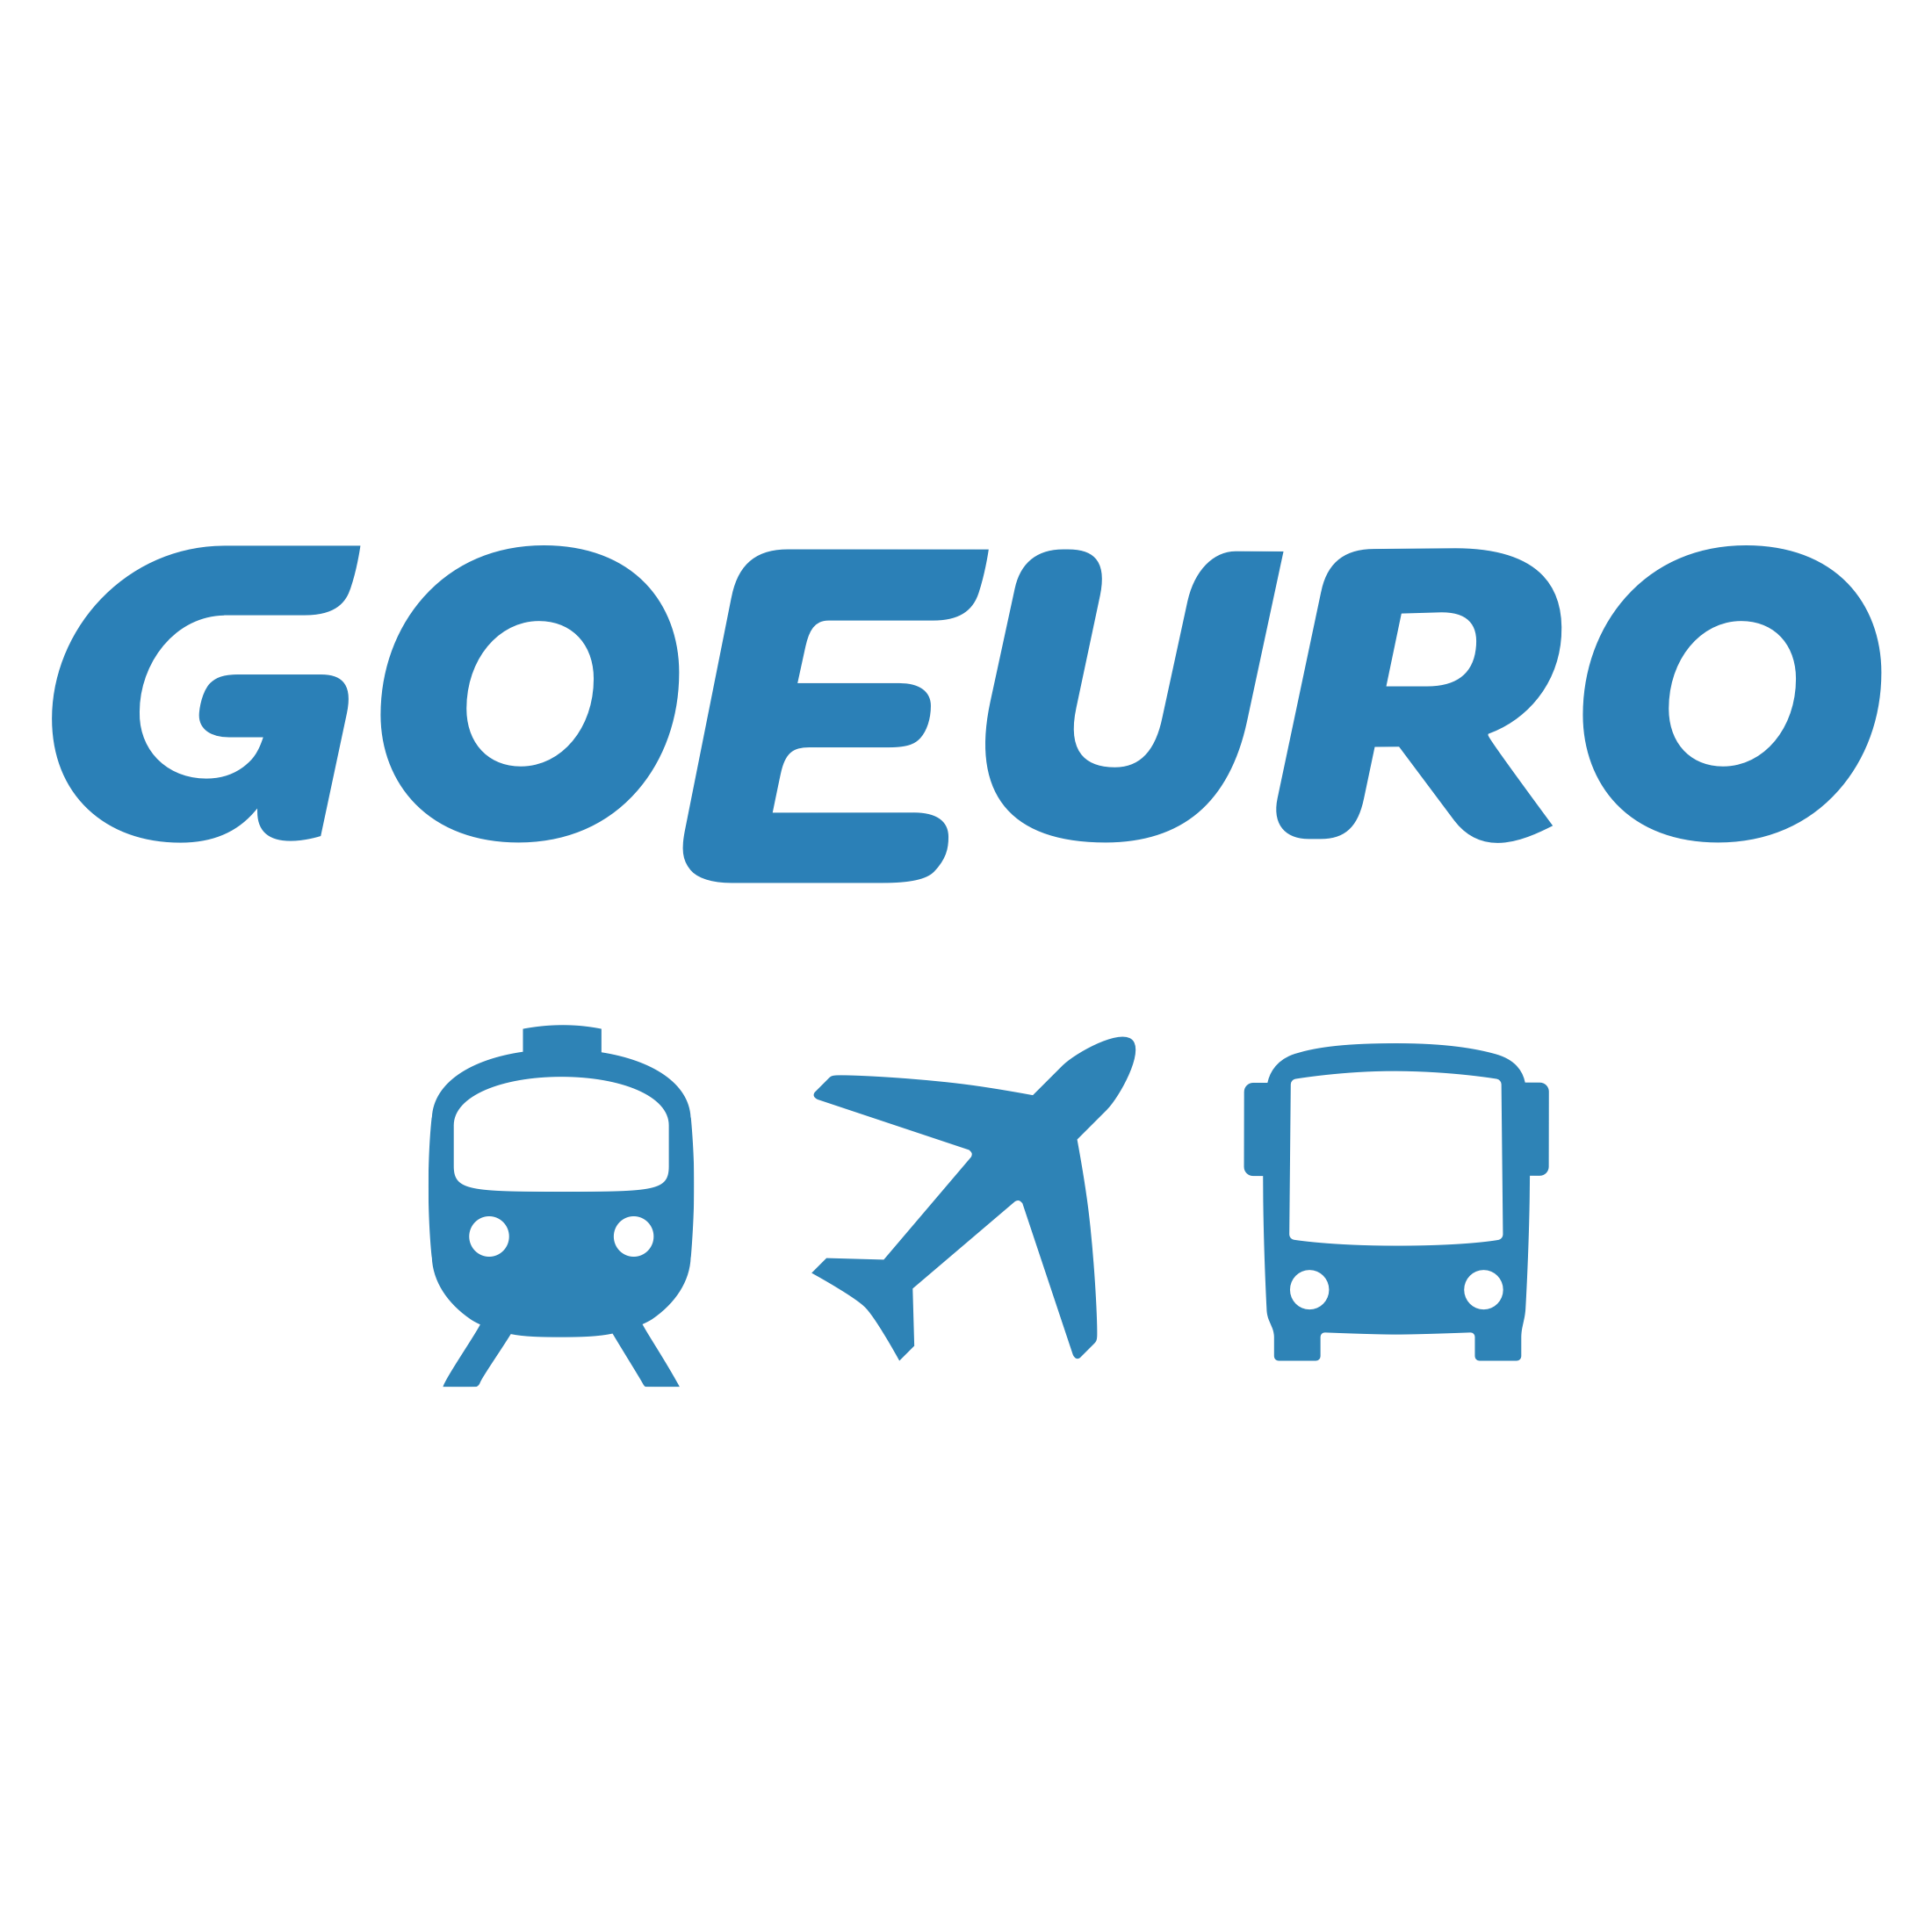 ヨーロッパ旅行で1度は使いたいアプリ・GoEuro